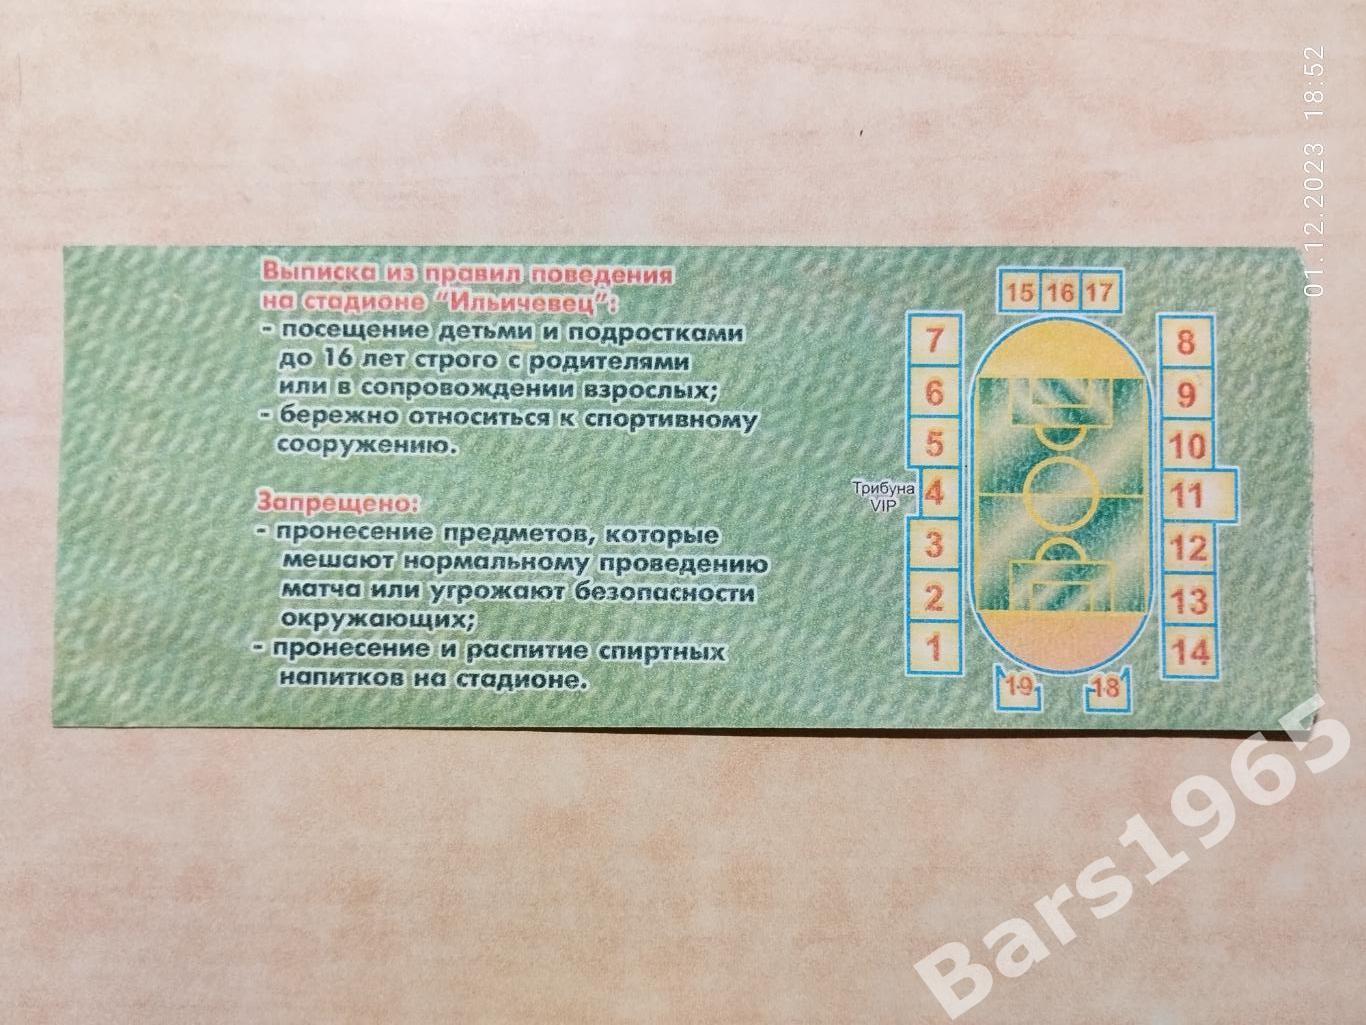 Ильичевец Мариуполь - Бананц Ереван Армения 2004 Билет 1